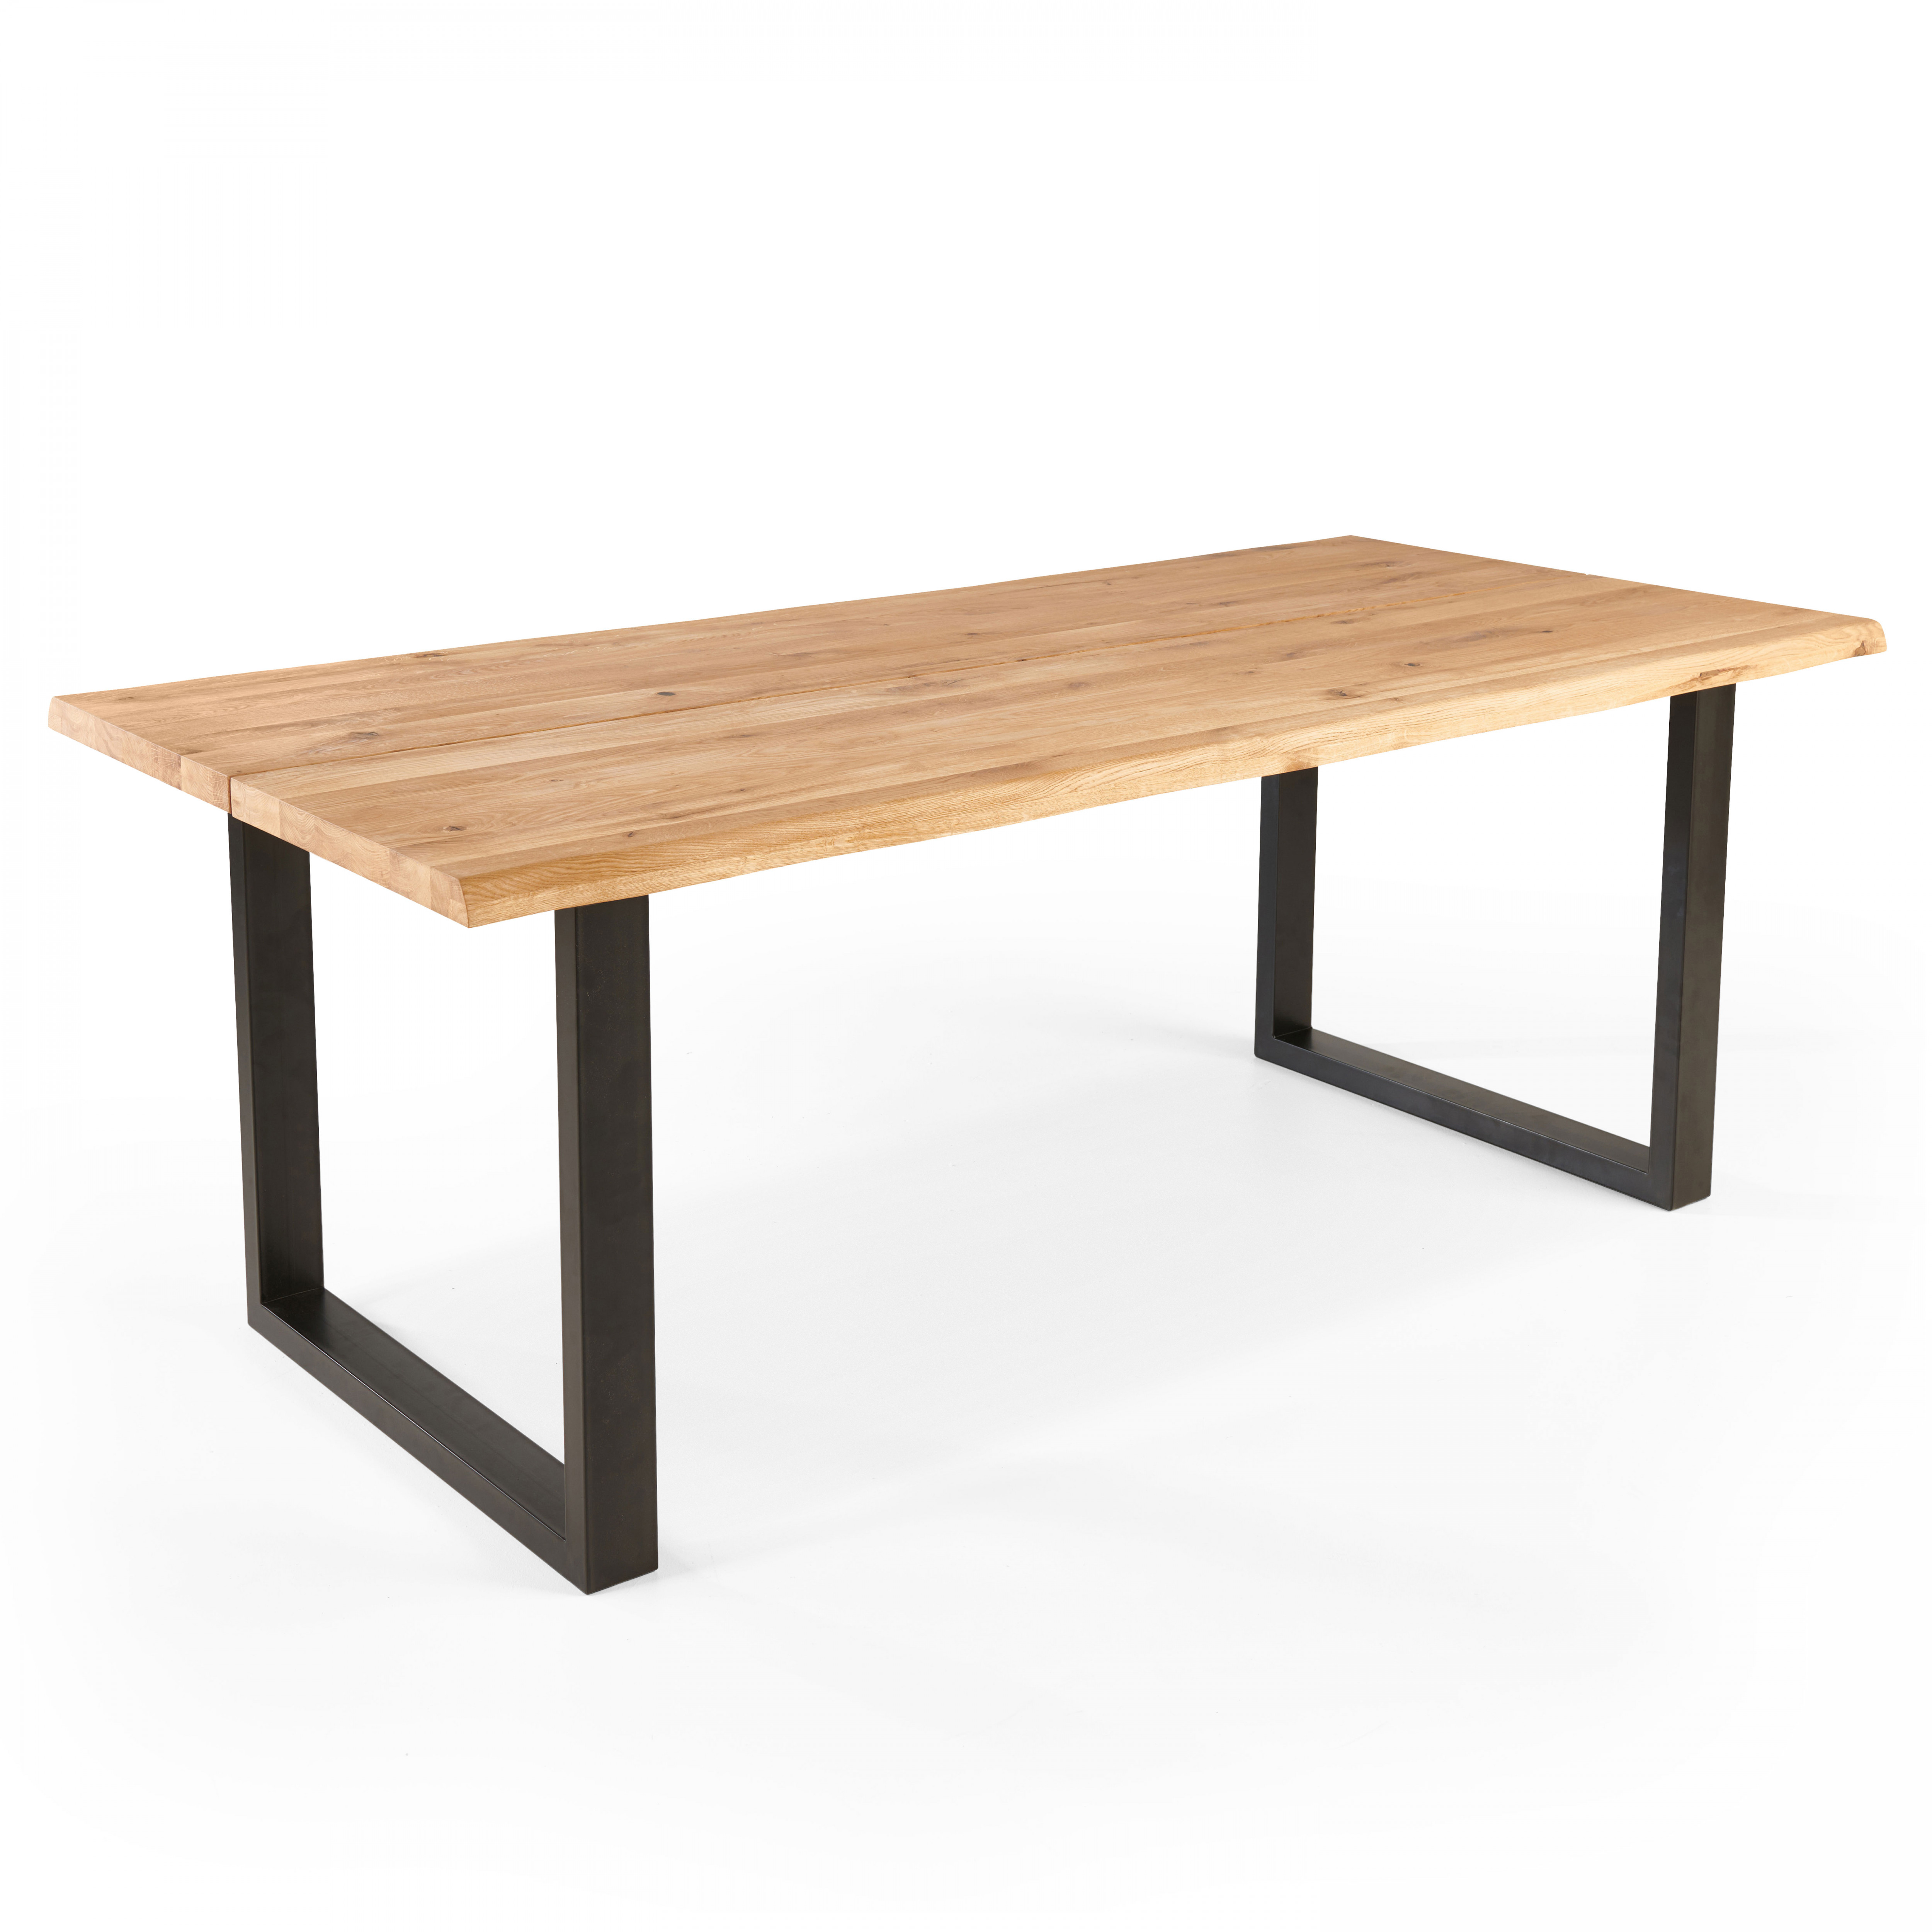 Table rectangulaire en chêne avec bords irréguliers et pieds en forme de U